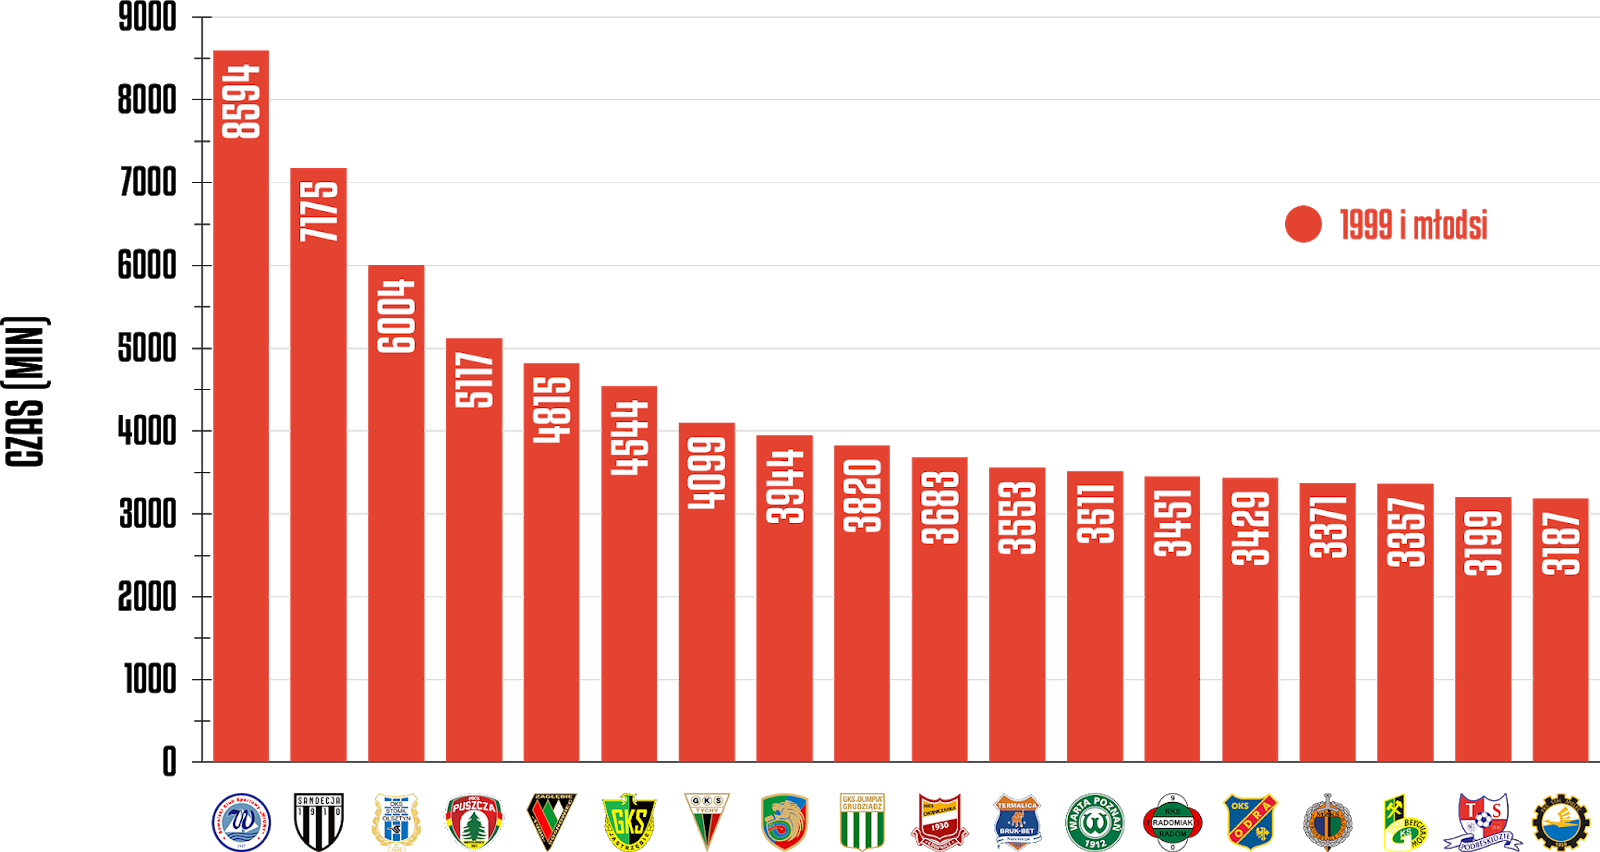 Klasyfikacja klubów pod względem rozegranego czasu przez młodzieżowców w rozgrywkach Fortuna 1 Ligi 2019/20<br><br>Źródło: Opracowanie własne na podstawie 90minut.pl<br><br>graf. Bartosz Urban